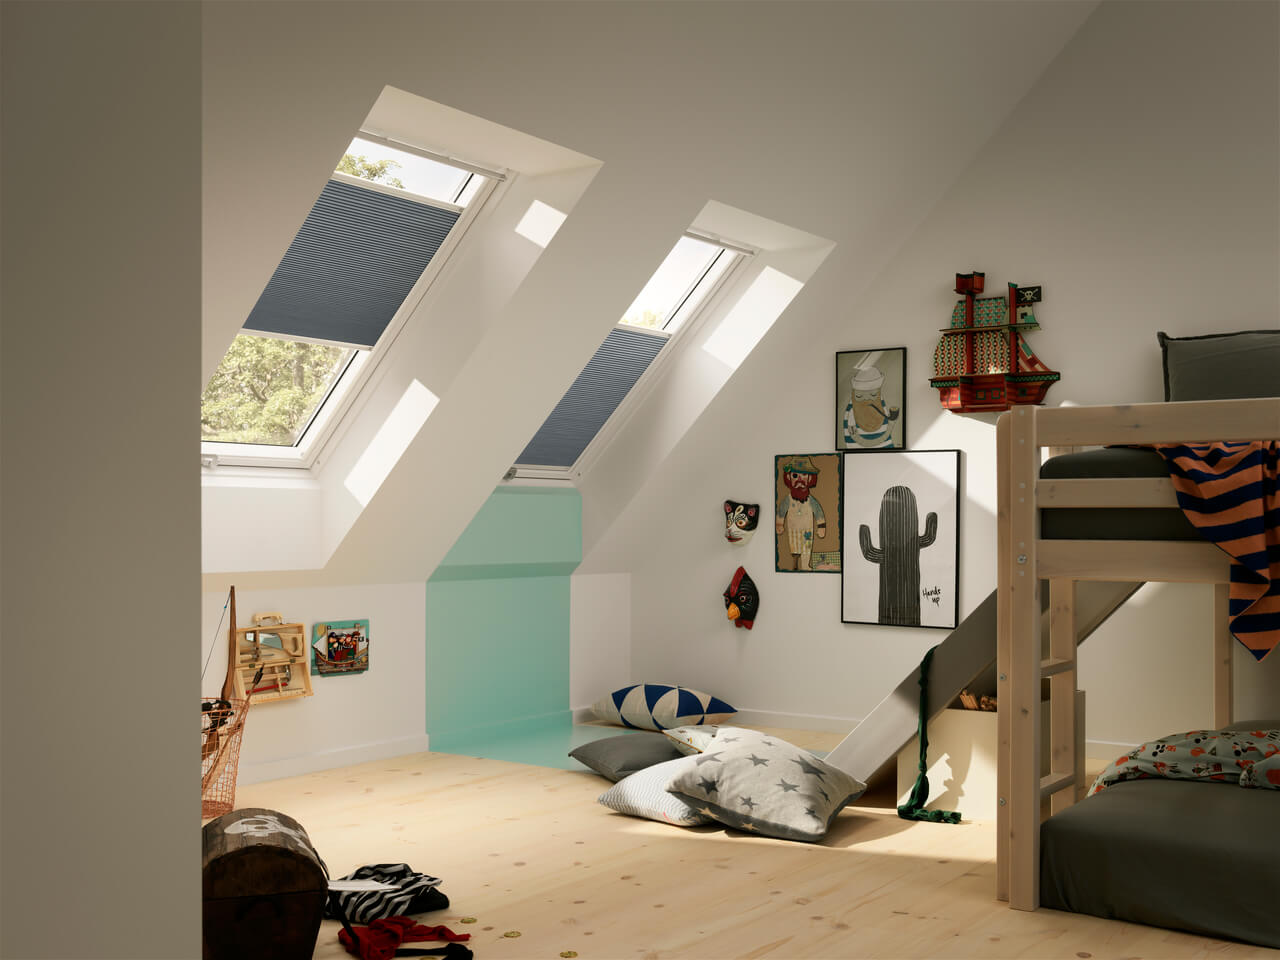 Spielzimmer im Dachboden mit VELUX Dachflächenfenstern, Etagenbett und Wandkunst.